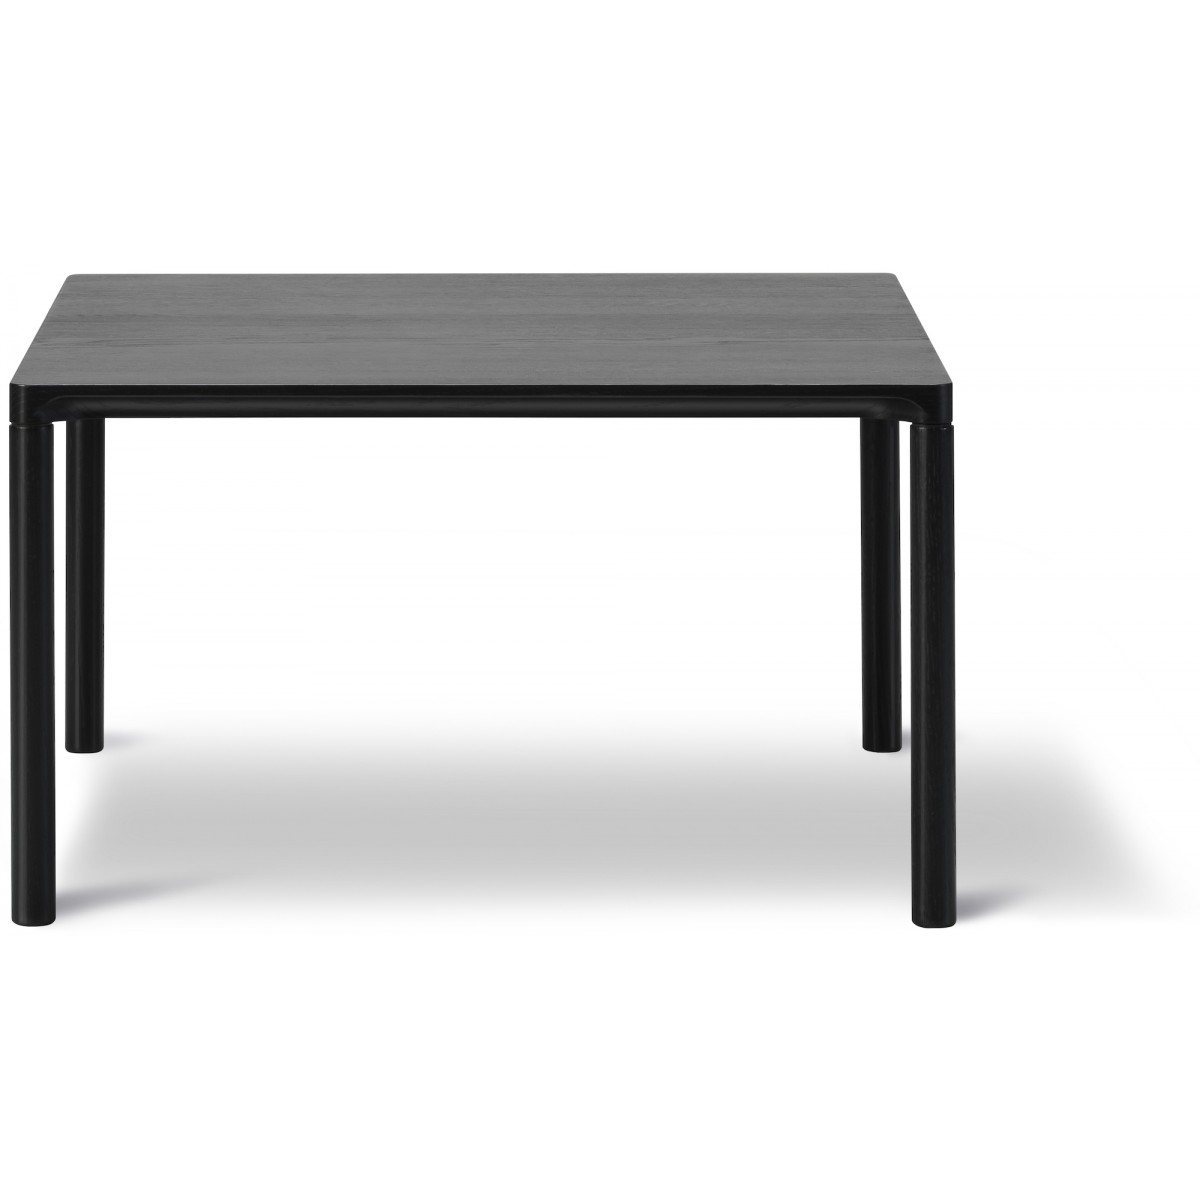 chêne peint en noir – 63 x 63 cm – table basse Piloti 6725